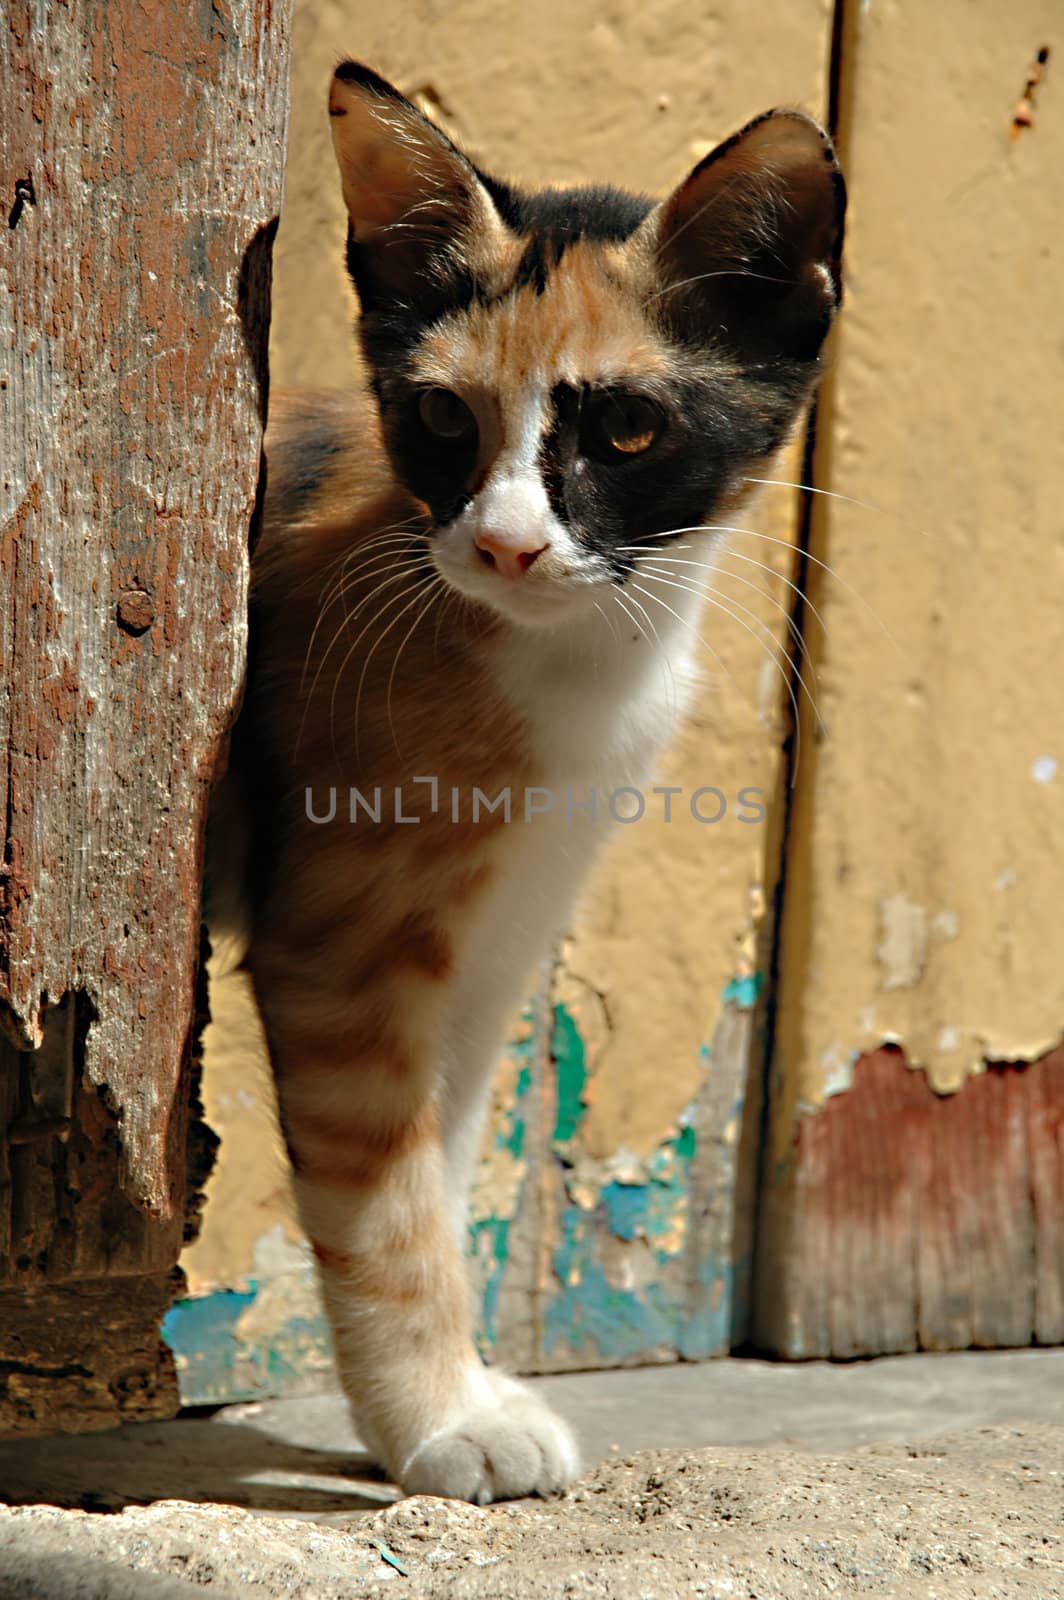 Cat and wooden door by cfoto